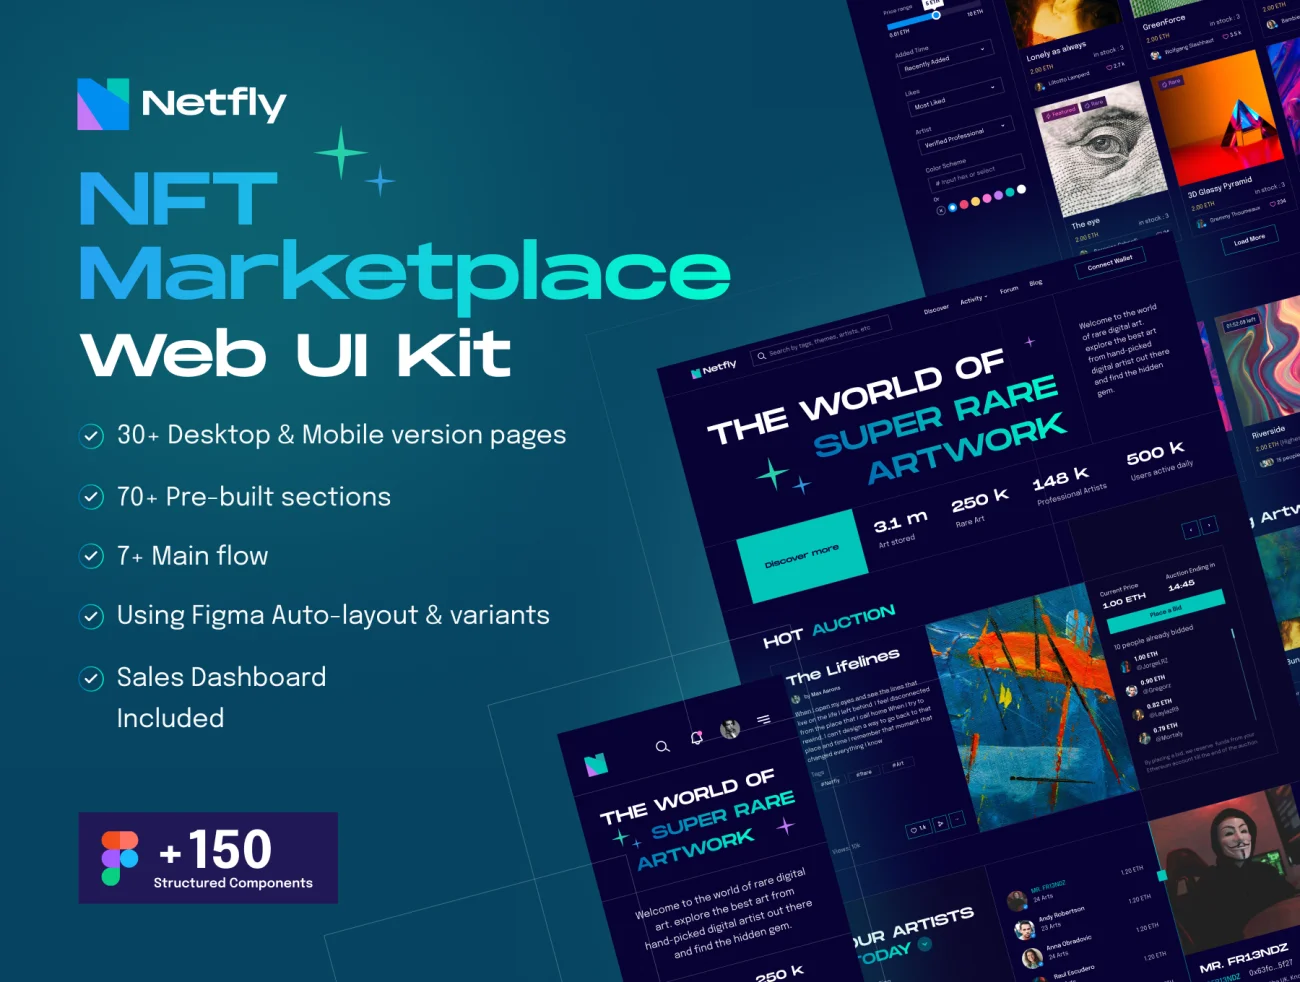 150款组件NFT非同质化虚拟版权交易平台网站UI设计套件 Netfly - NFT Marketplace Web UI Design Kit-UI/UX、ui套件、主页、介绍、付款、列表、博客、卡片式、图表、应用、播放器、注册、登录页、网站、网购、详情-到位啦UI